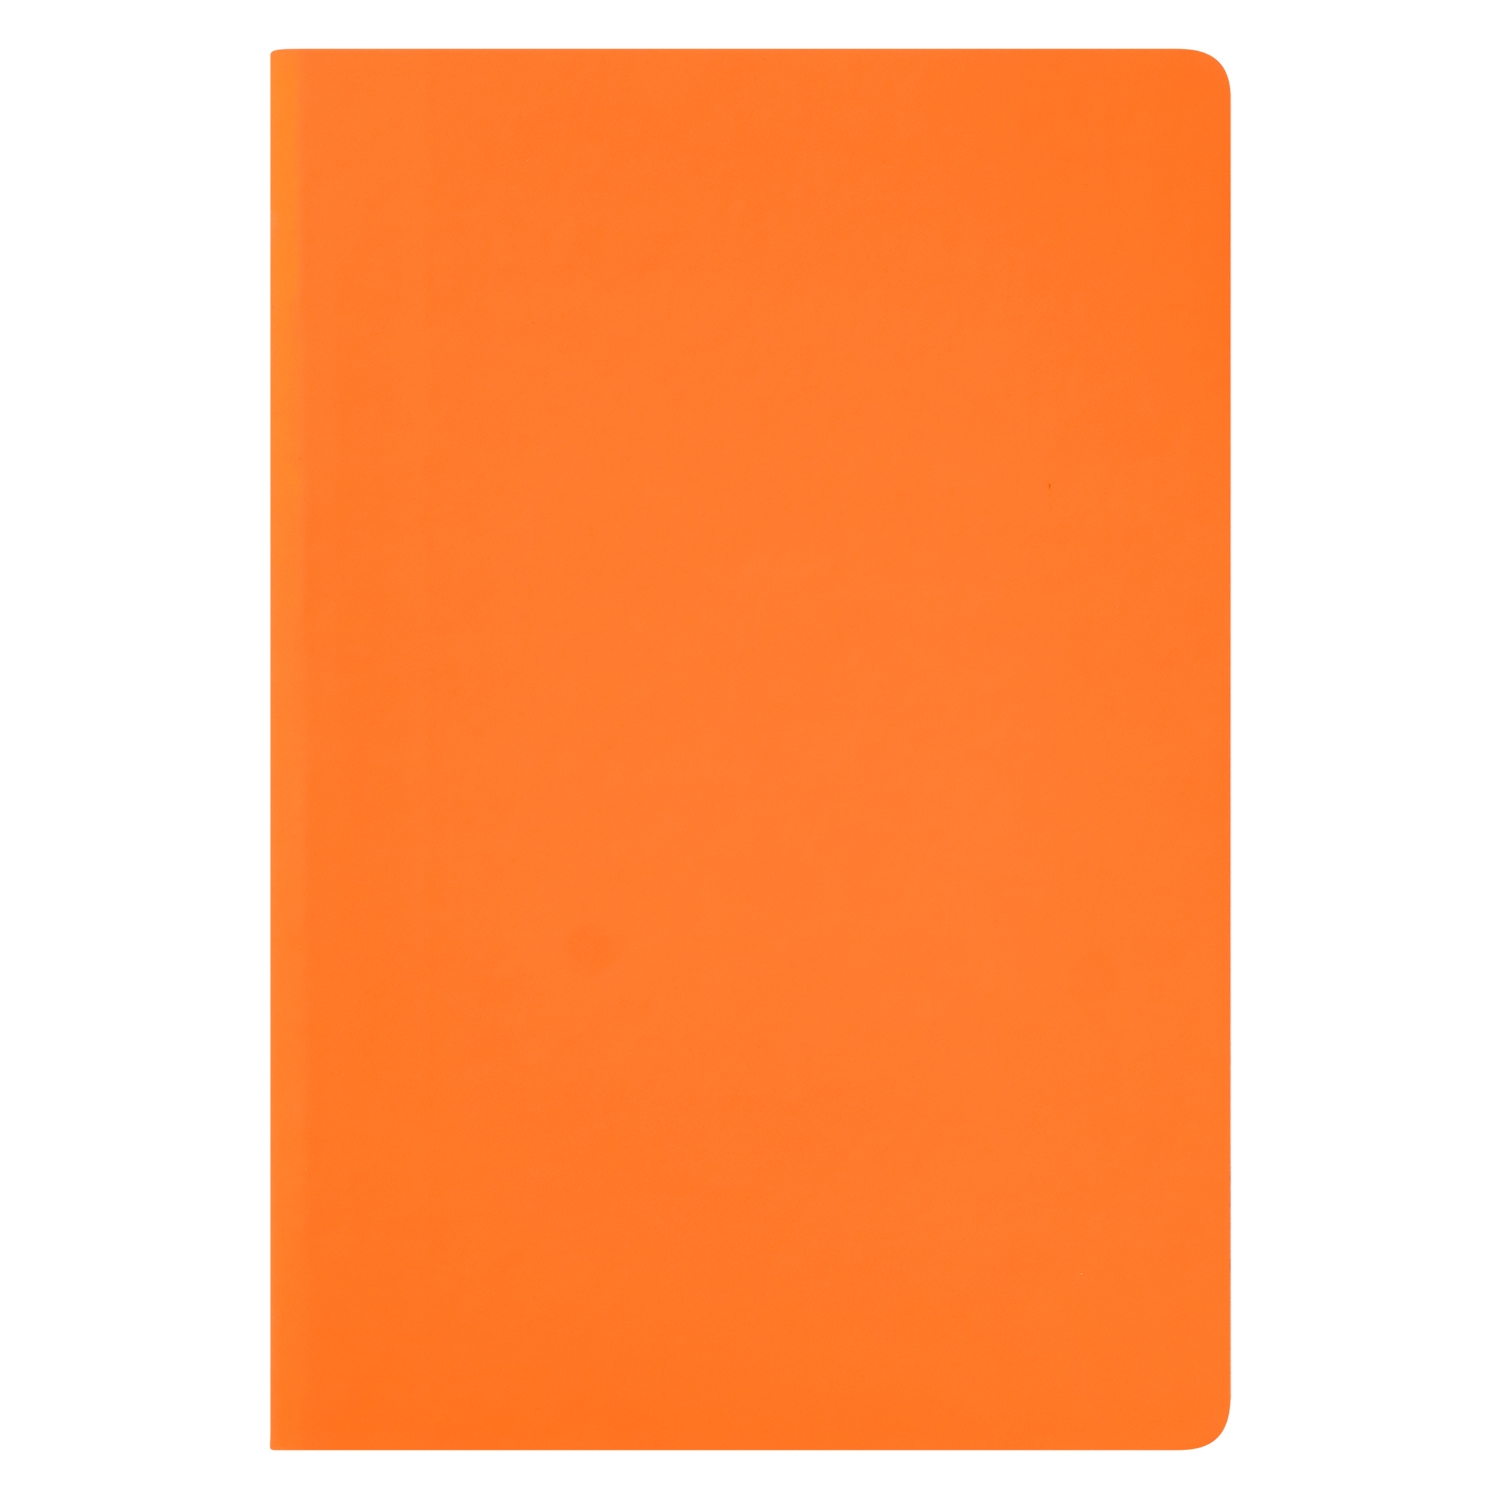 Ежедневник Portobello Trend, Spark, недатированный, оранжевый (без упаковки, без стикера)